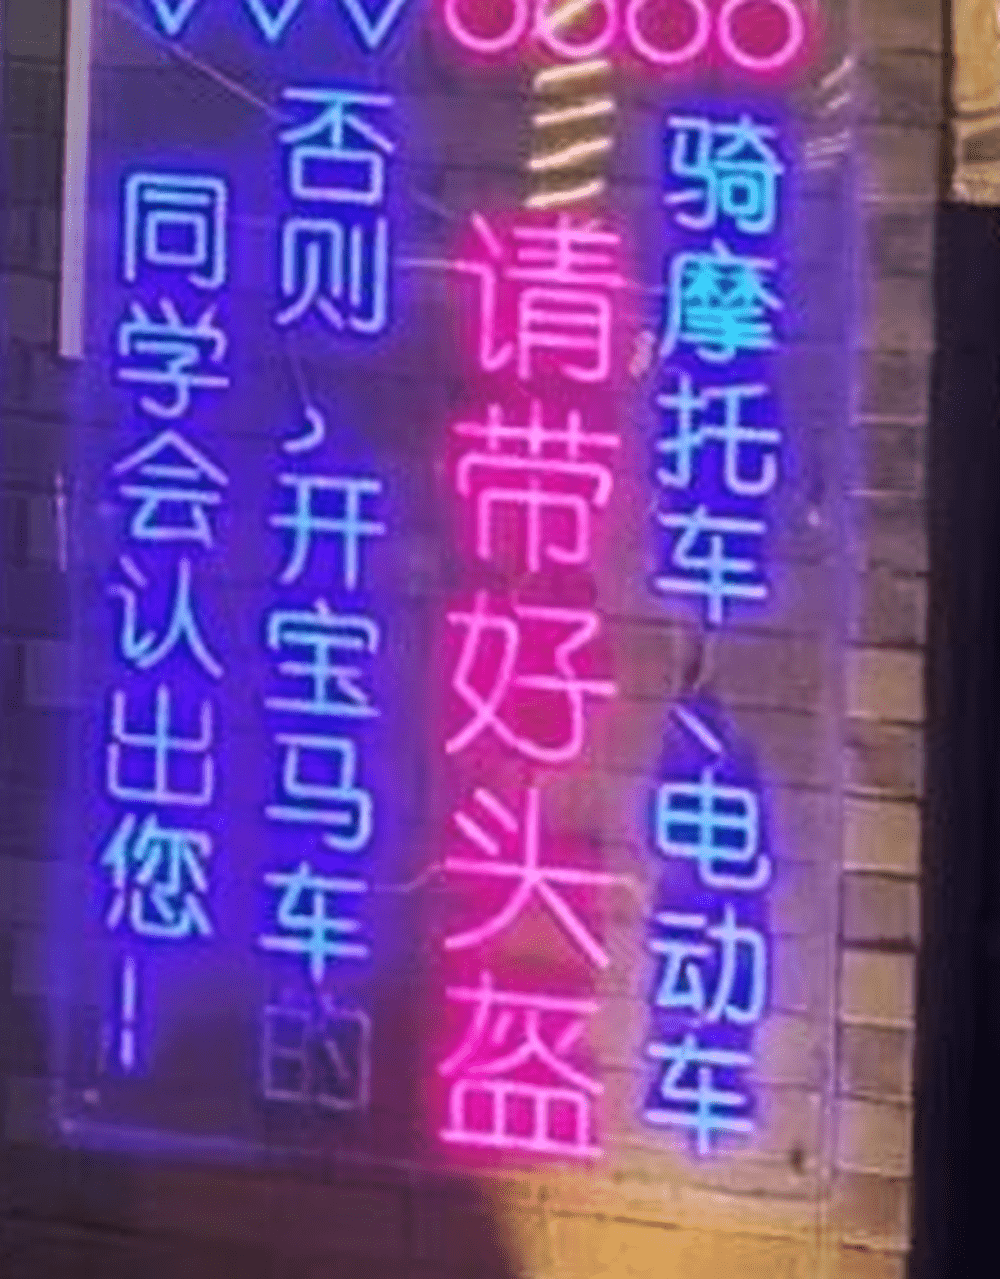 福建有警务室挂满彩色LED灯的宣传语句。